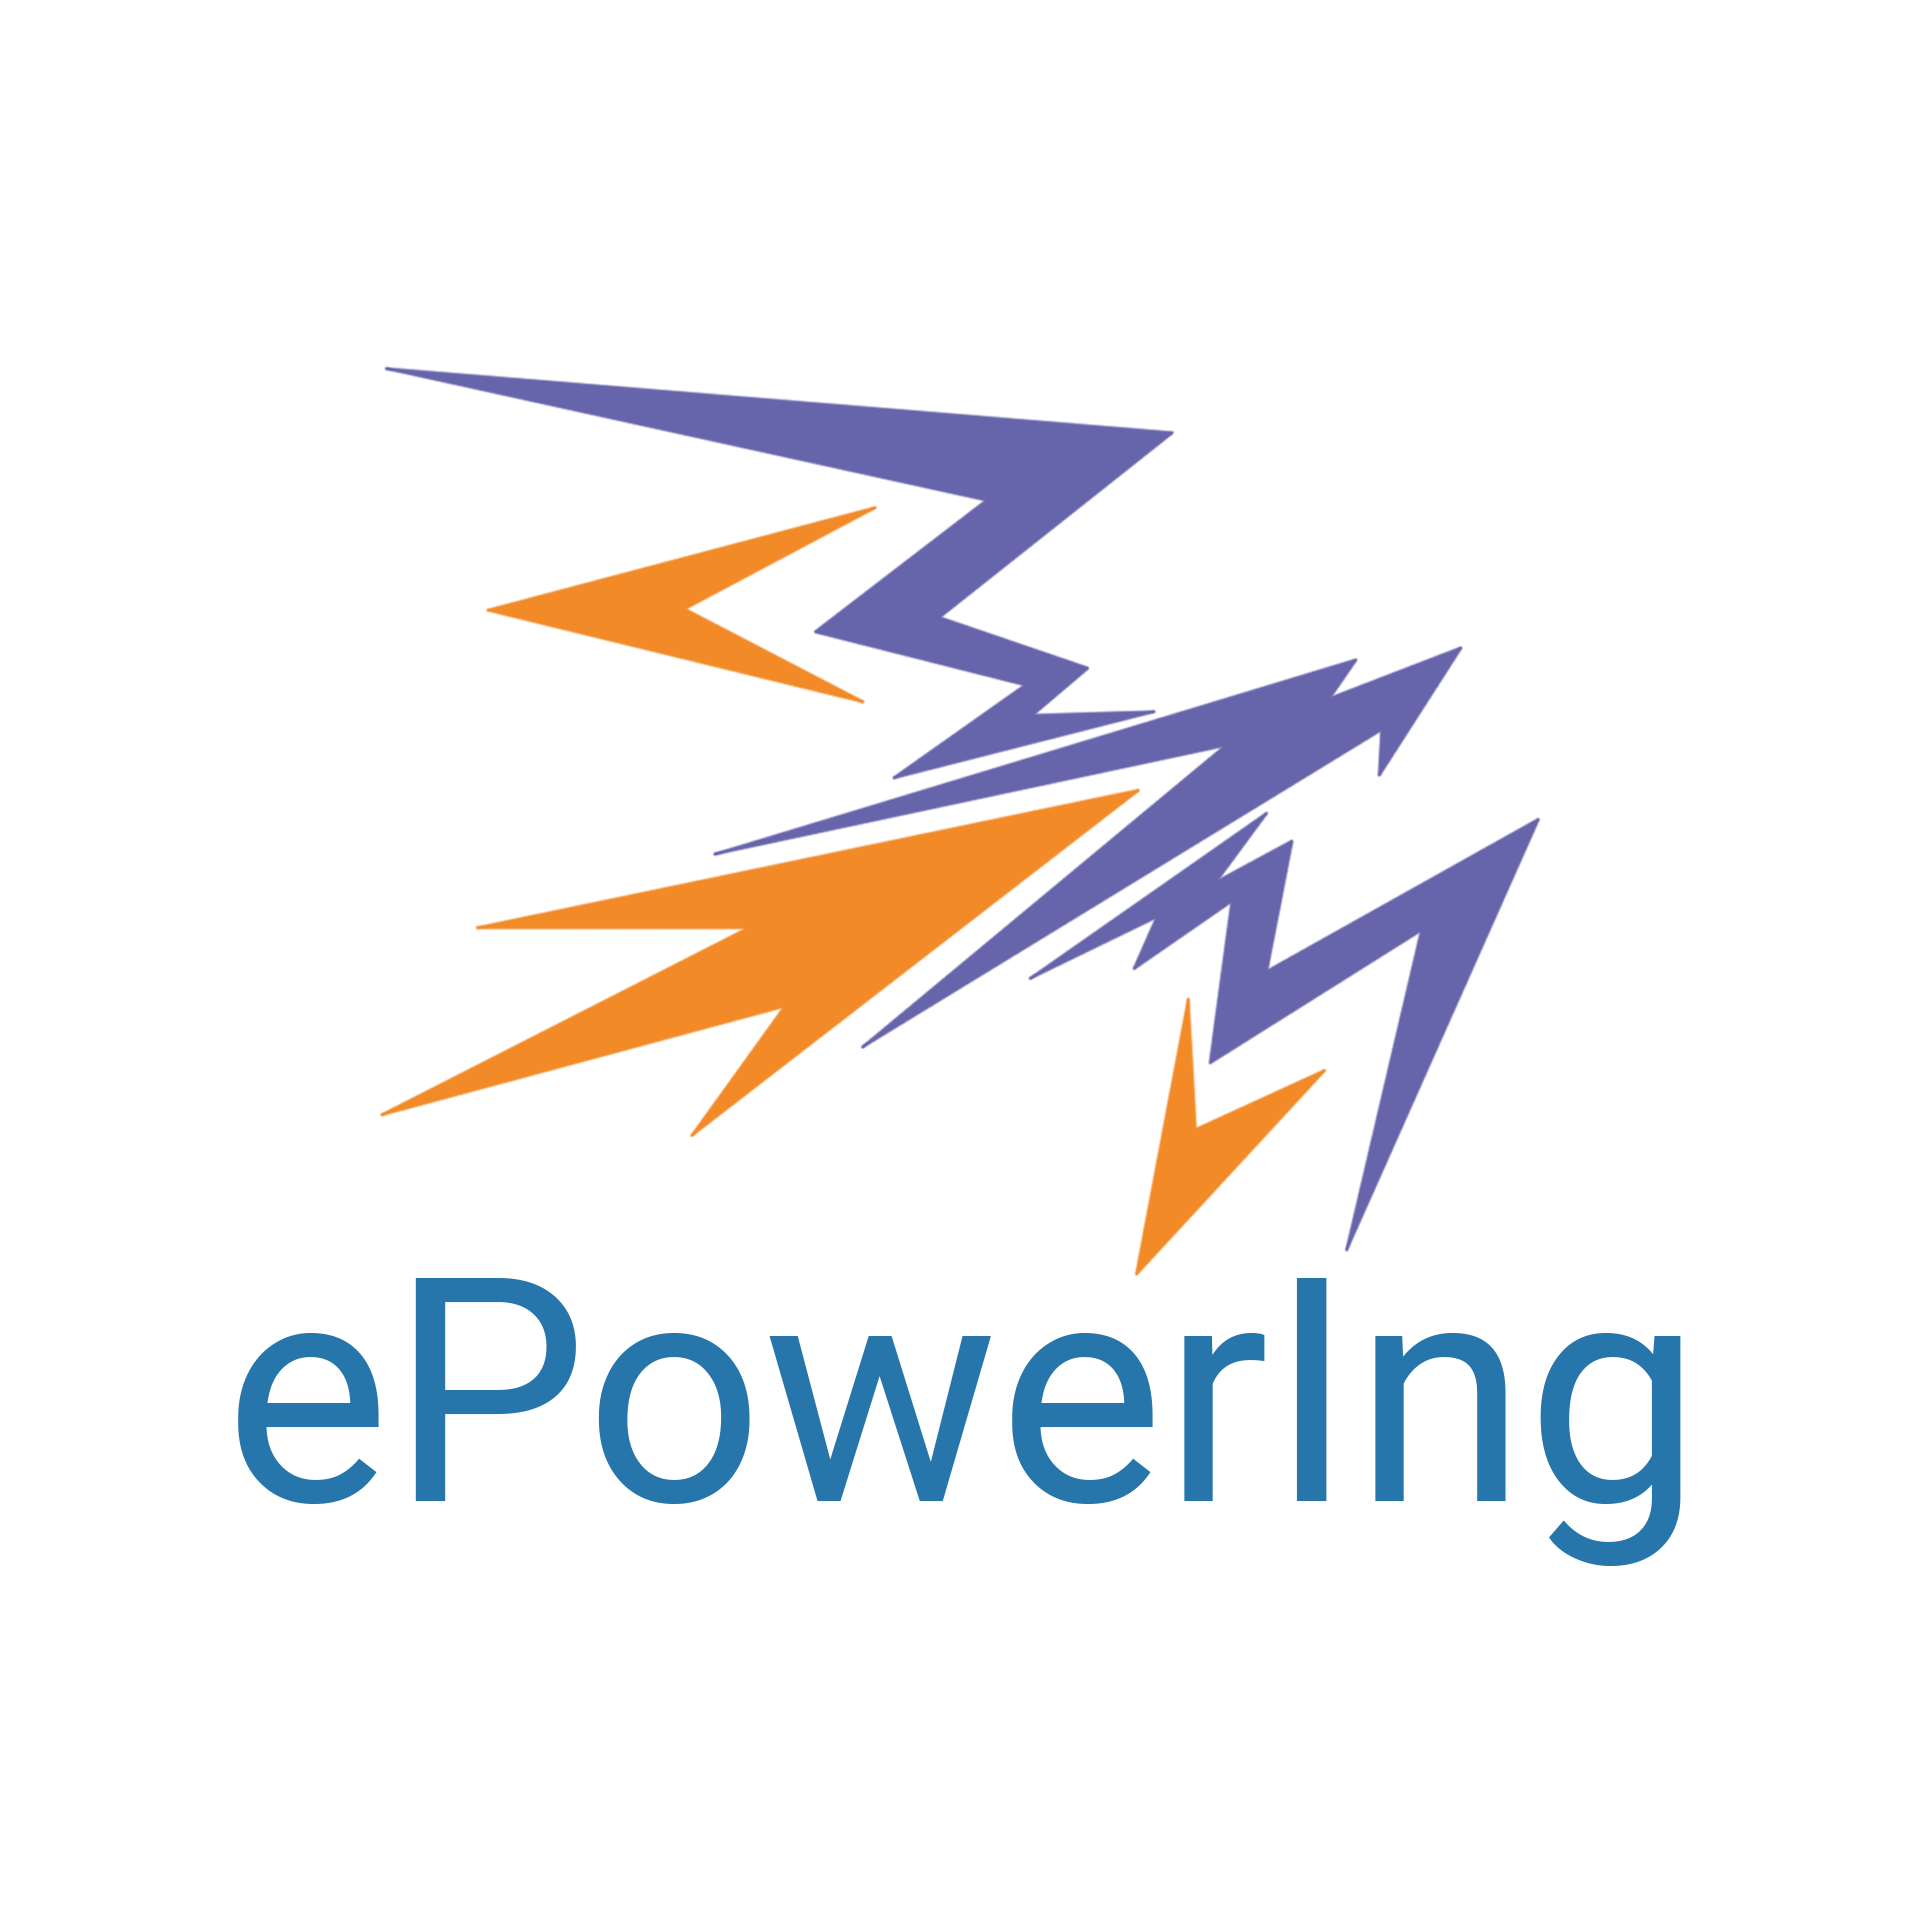 ePowerIng